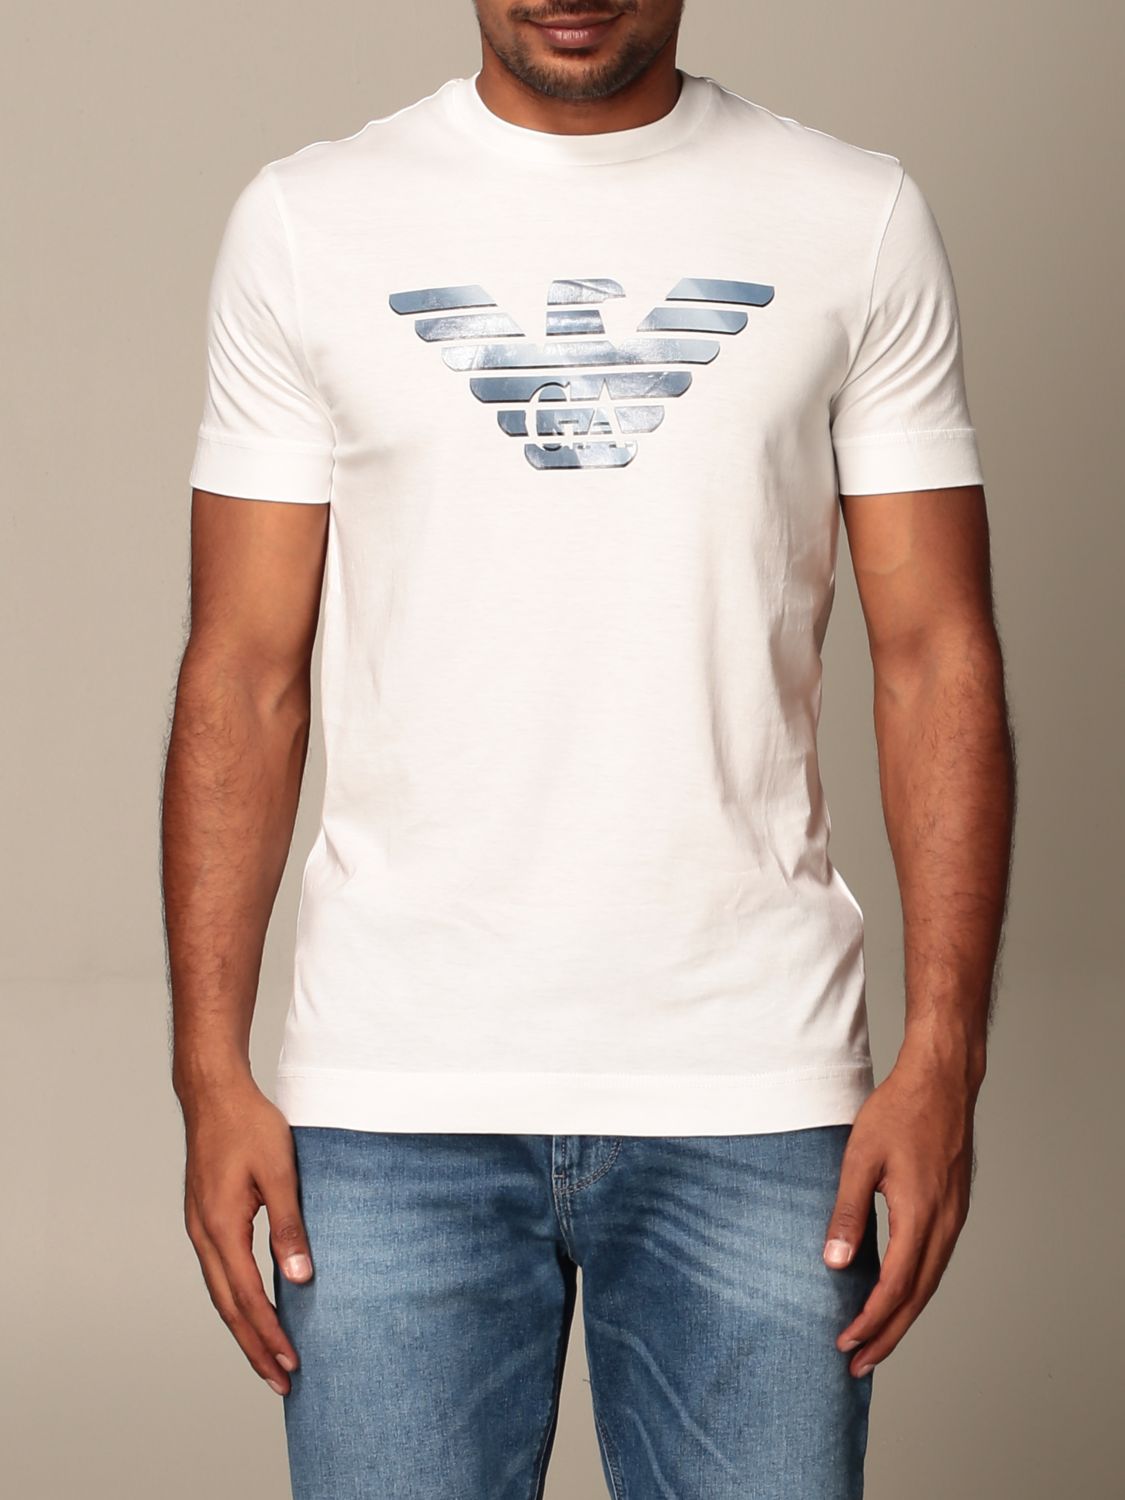 Emporio Armani Outlet: t-shirt for men - White | Emporio Armani t-shirt ...